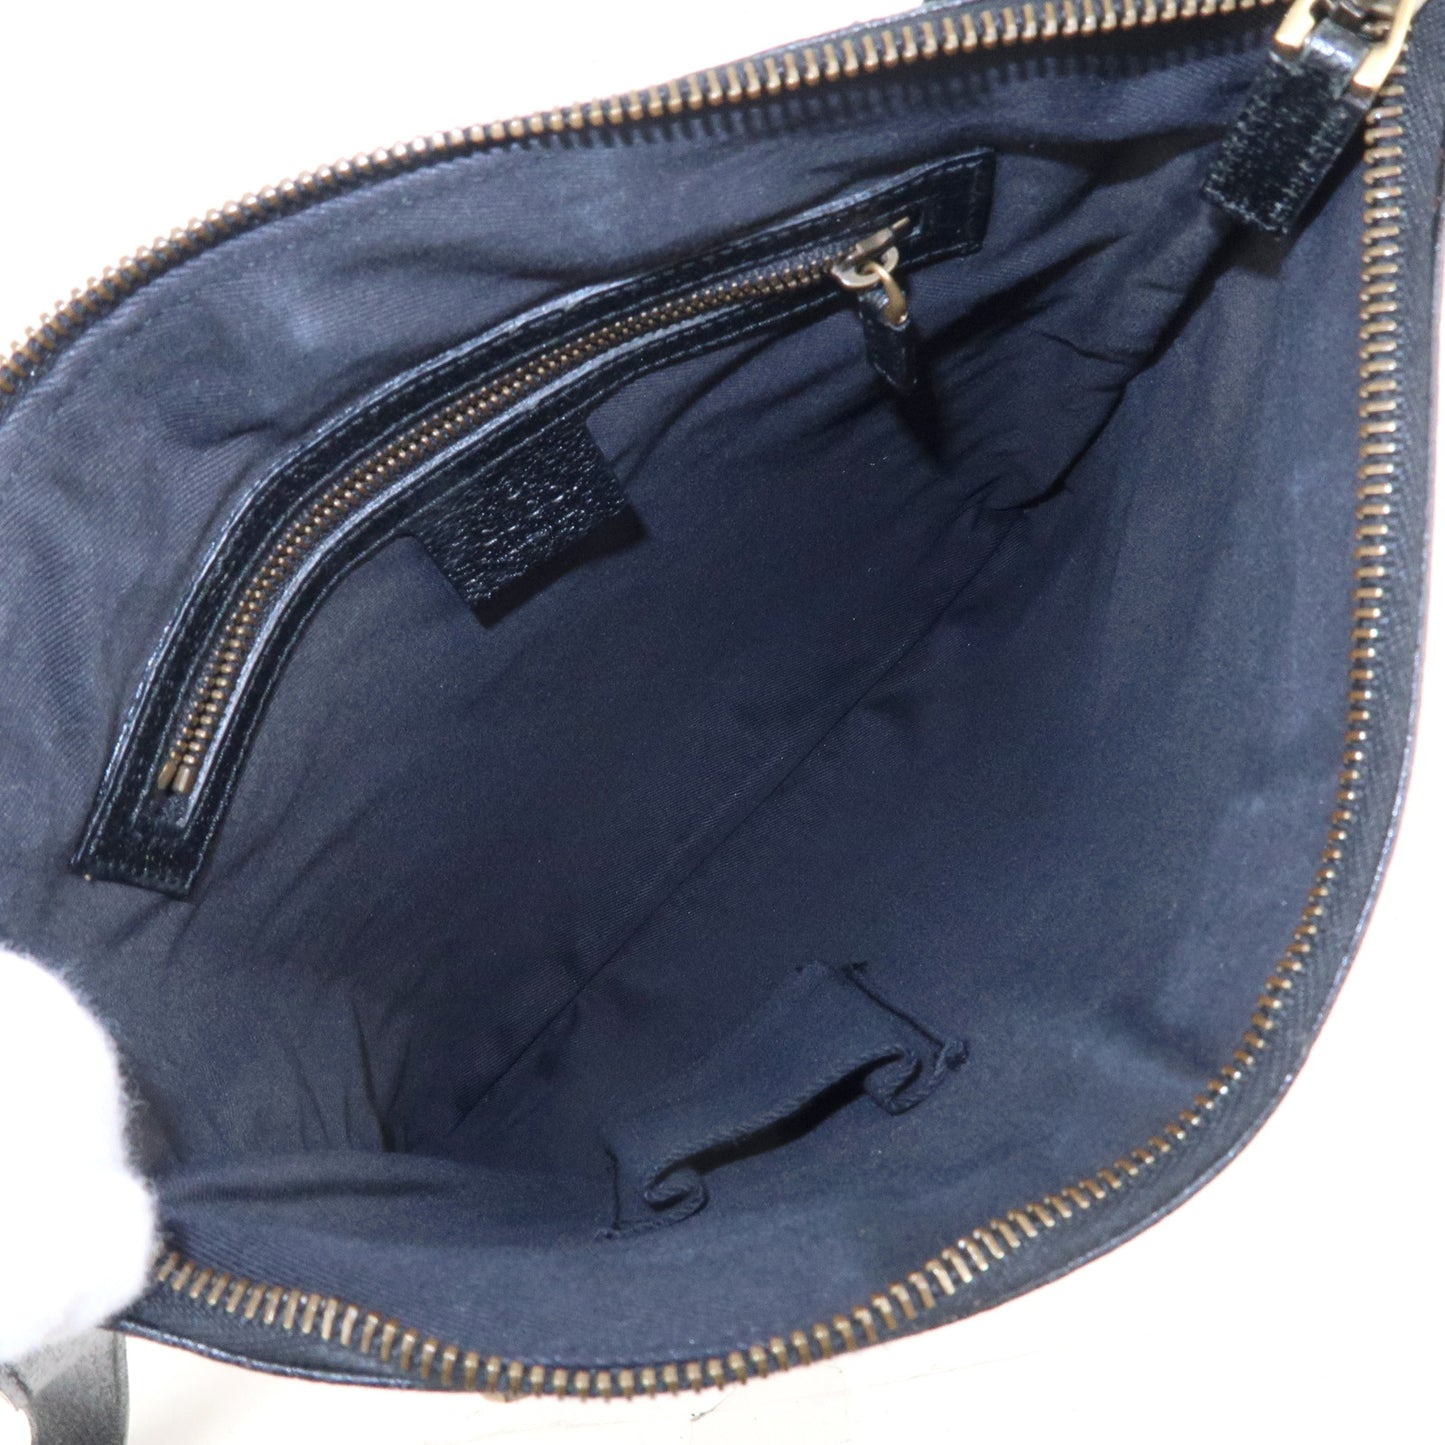 GUCCI GG Canvas Leather Studs Shoulder Bag Black 120893